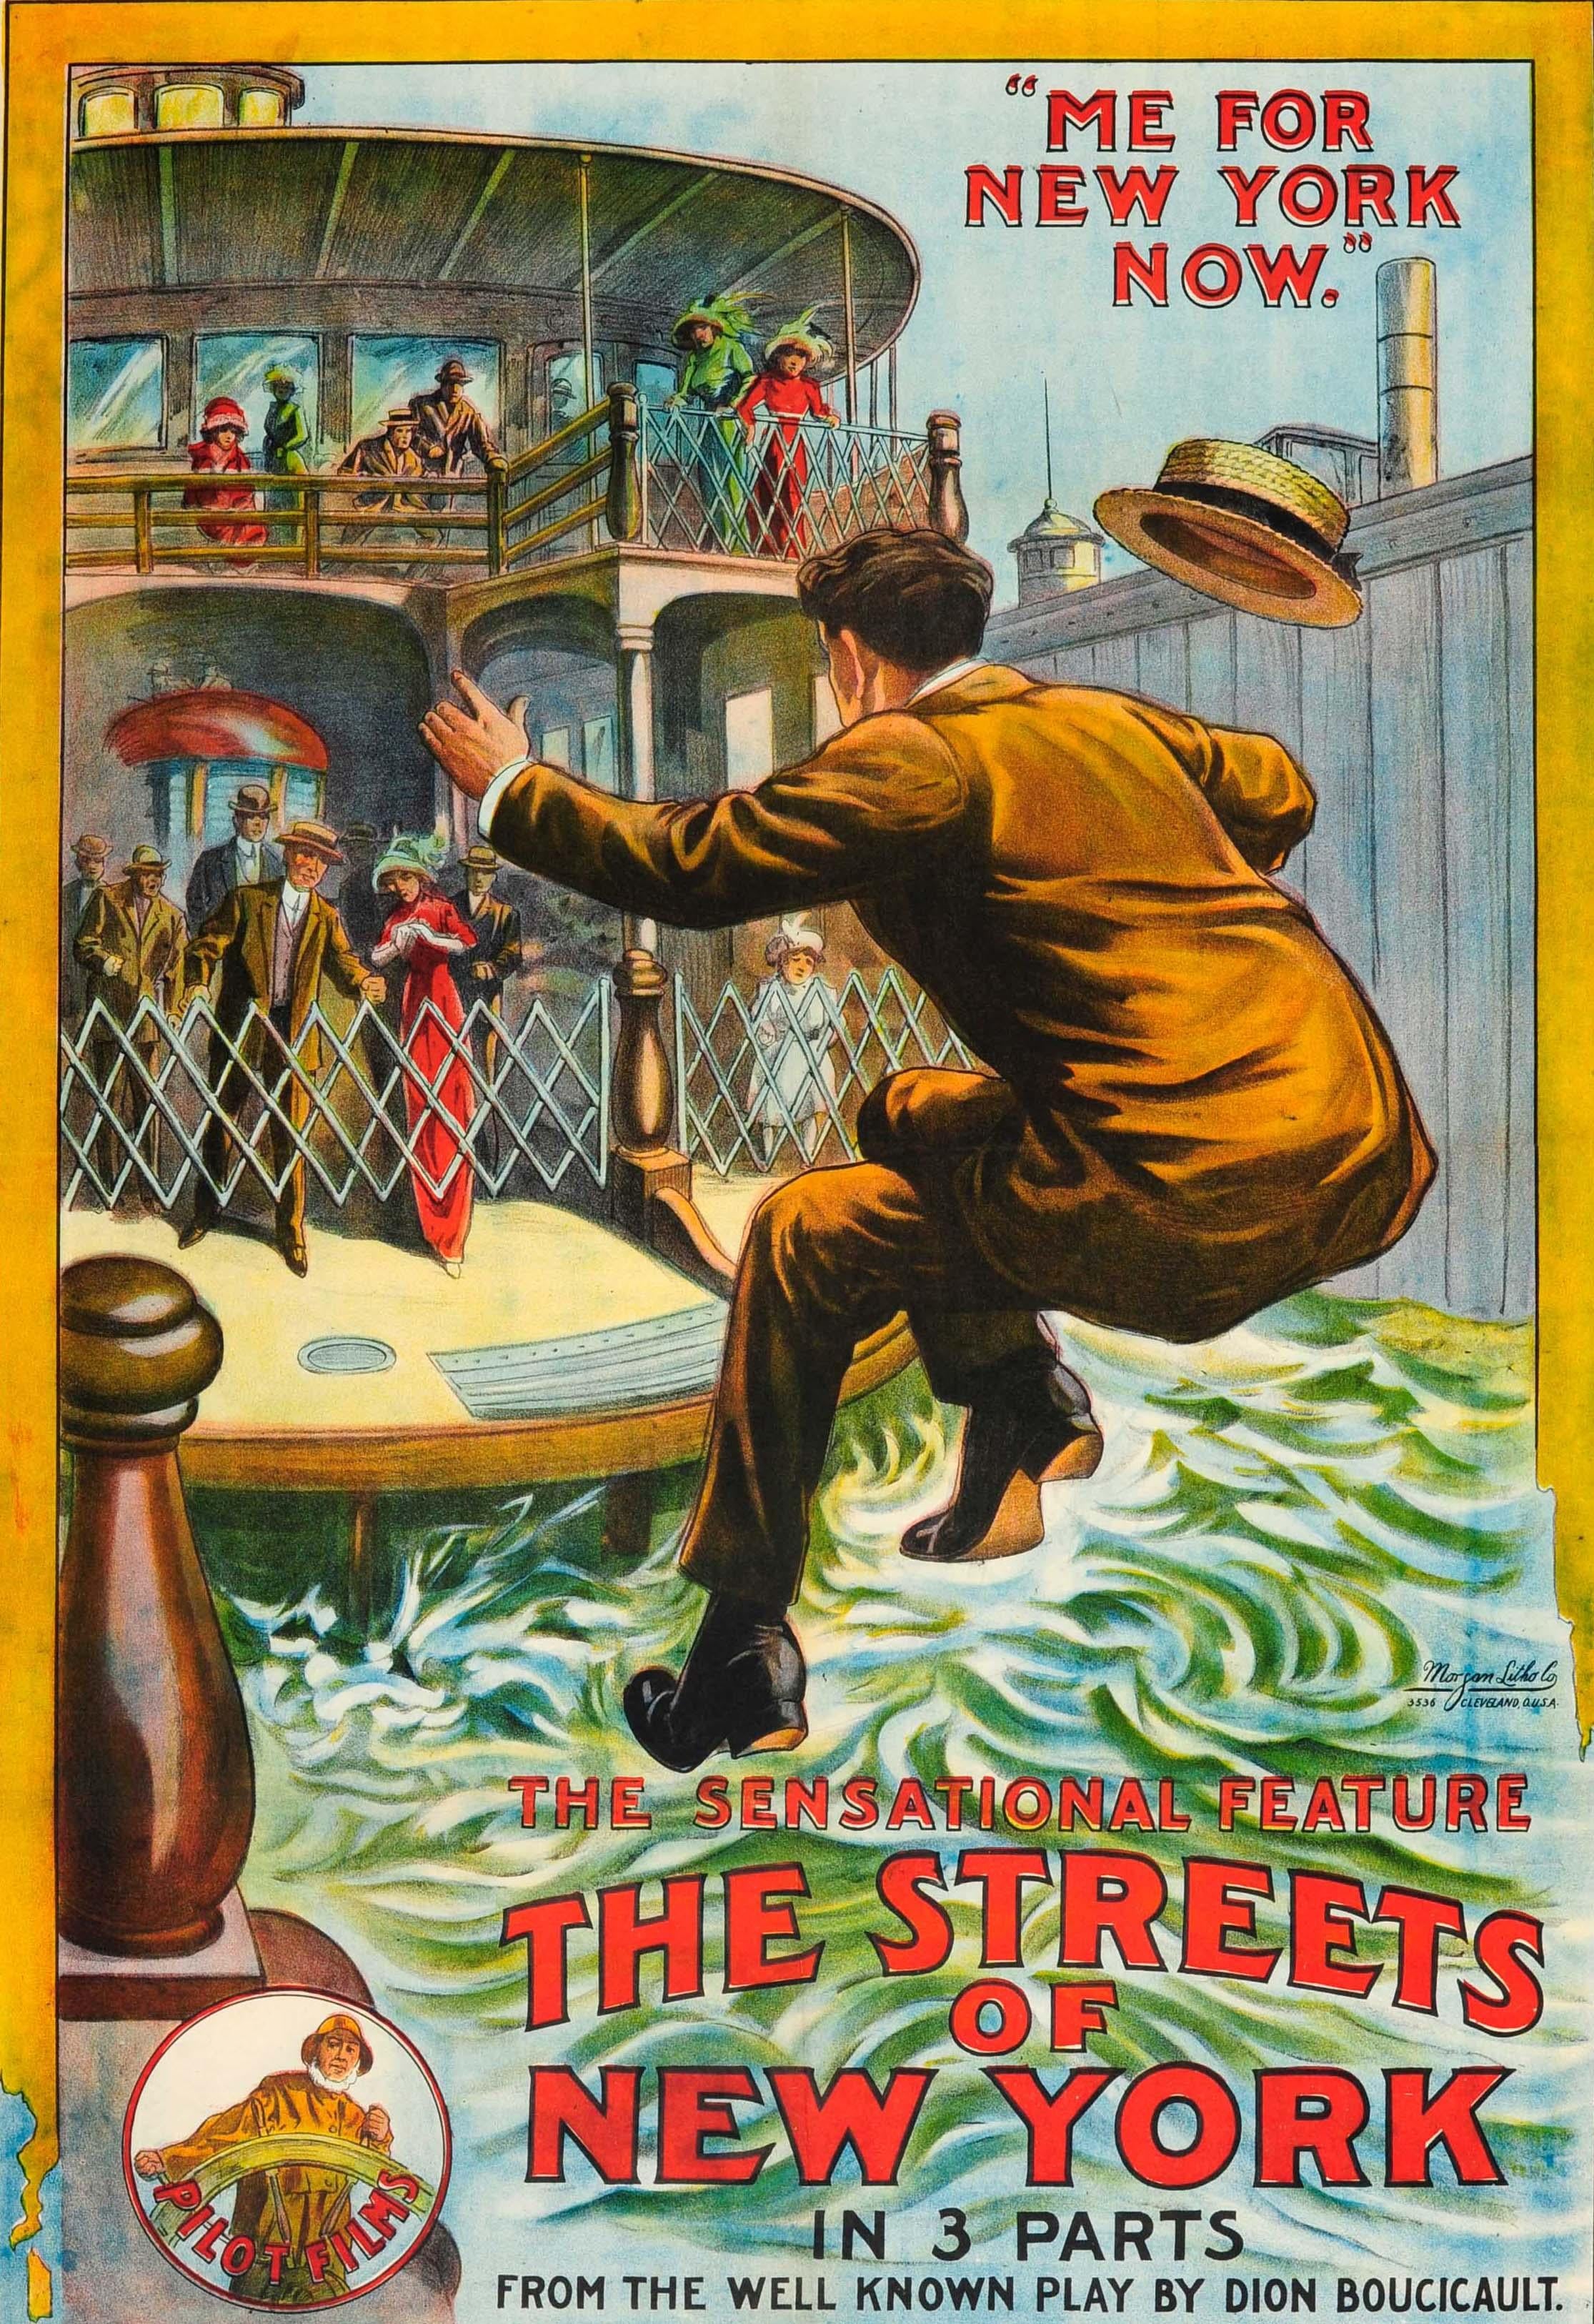 Affiche de cinéma ancienne et originale pour une comédie dramatique américaine The Streets of New York - The sensationnal feature in 3 parts 